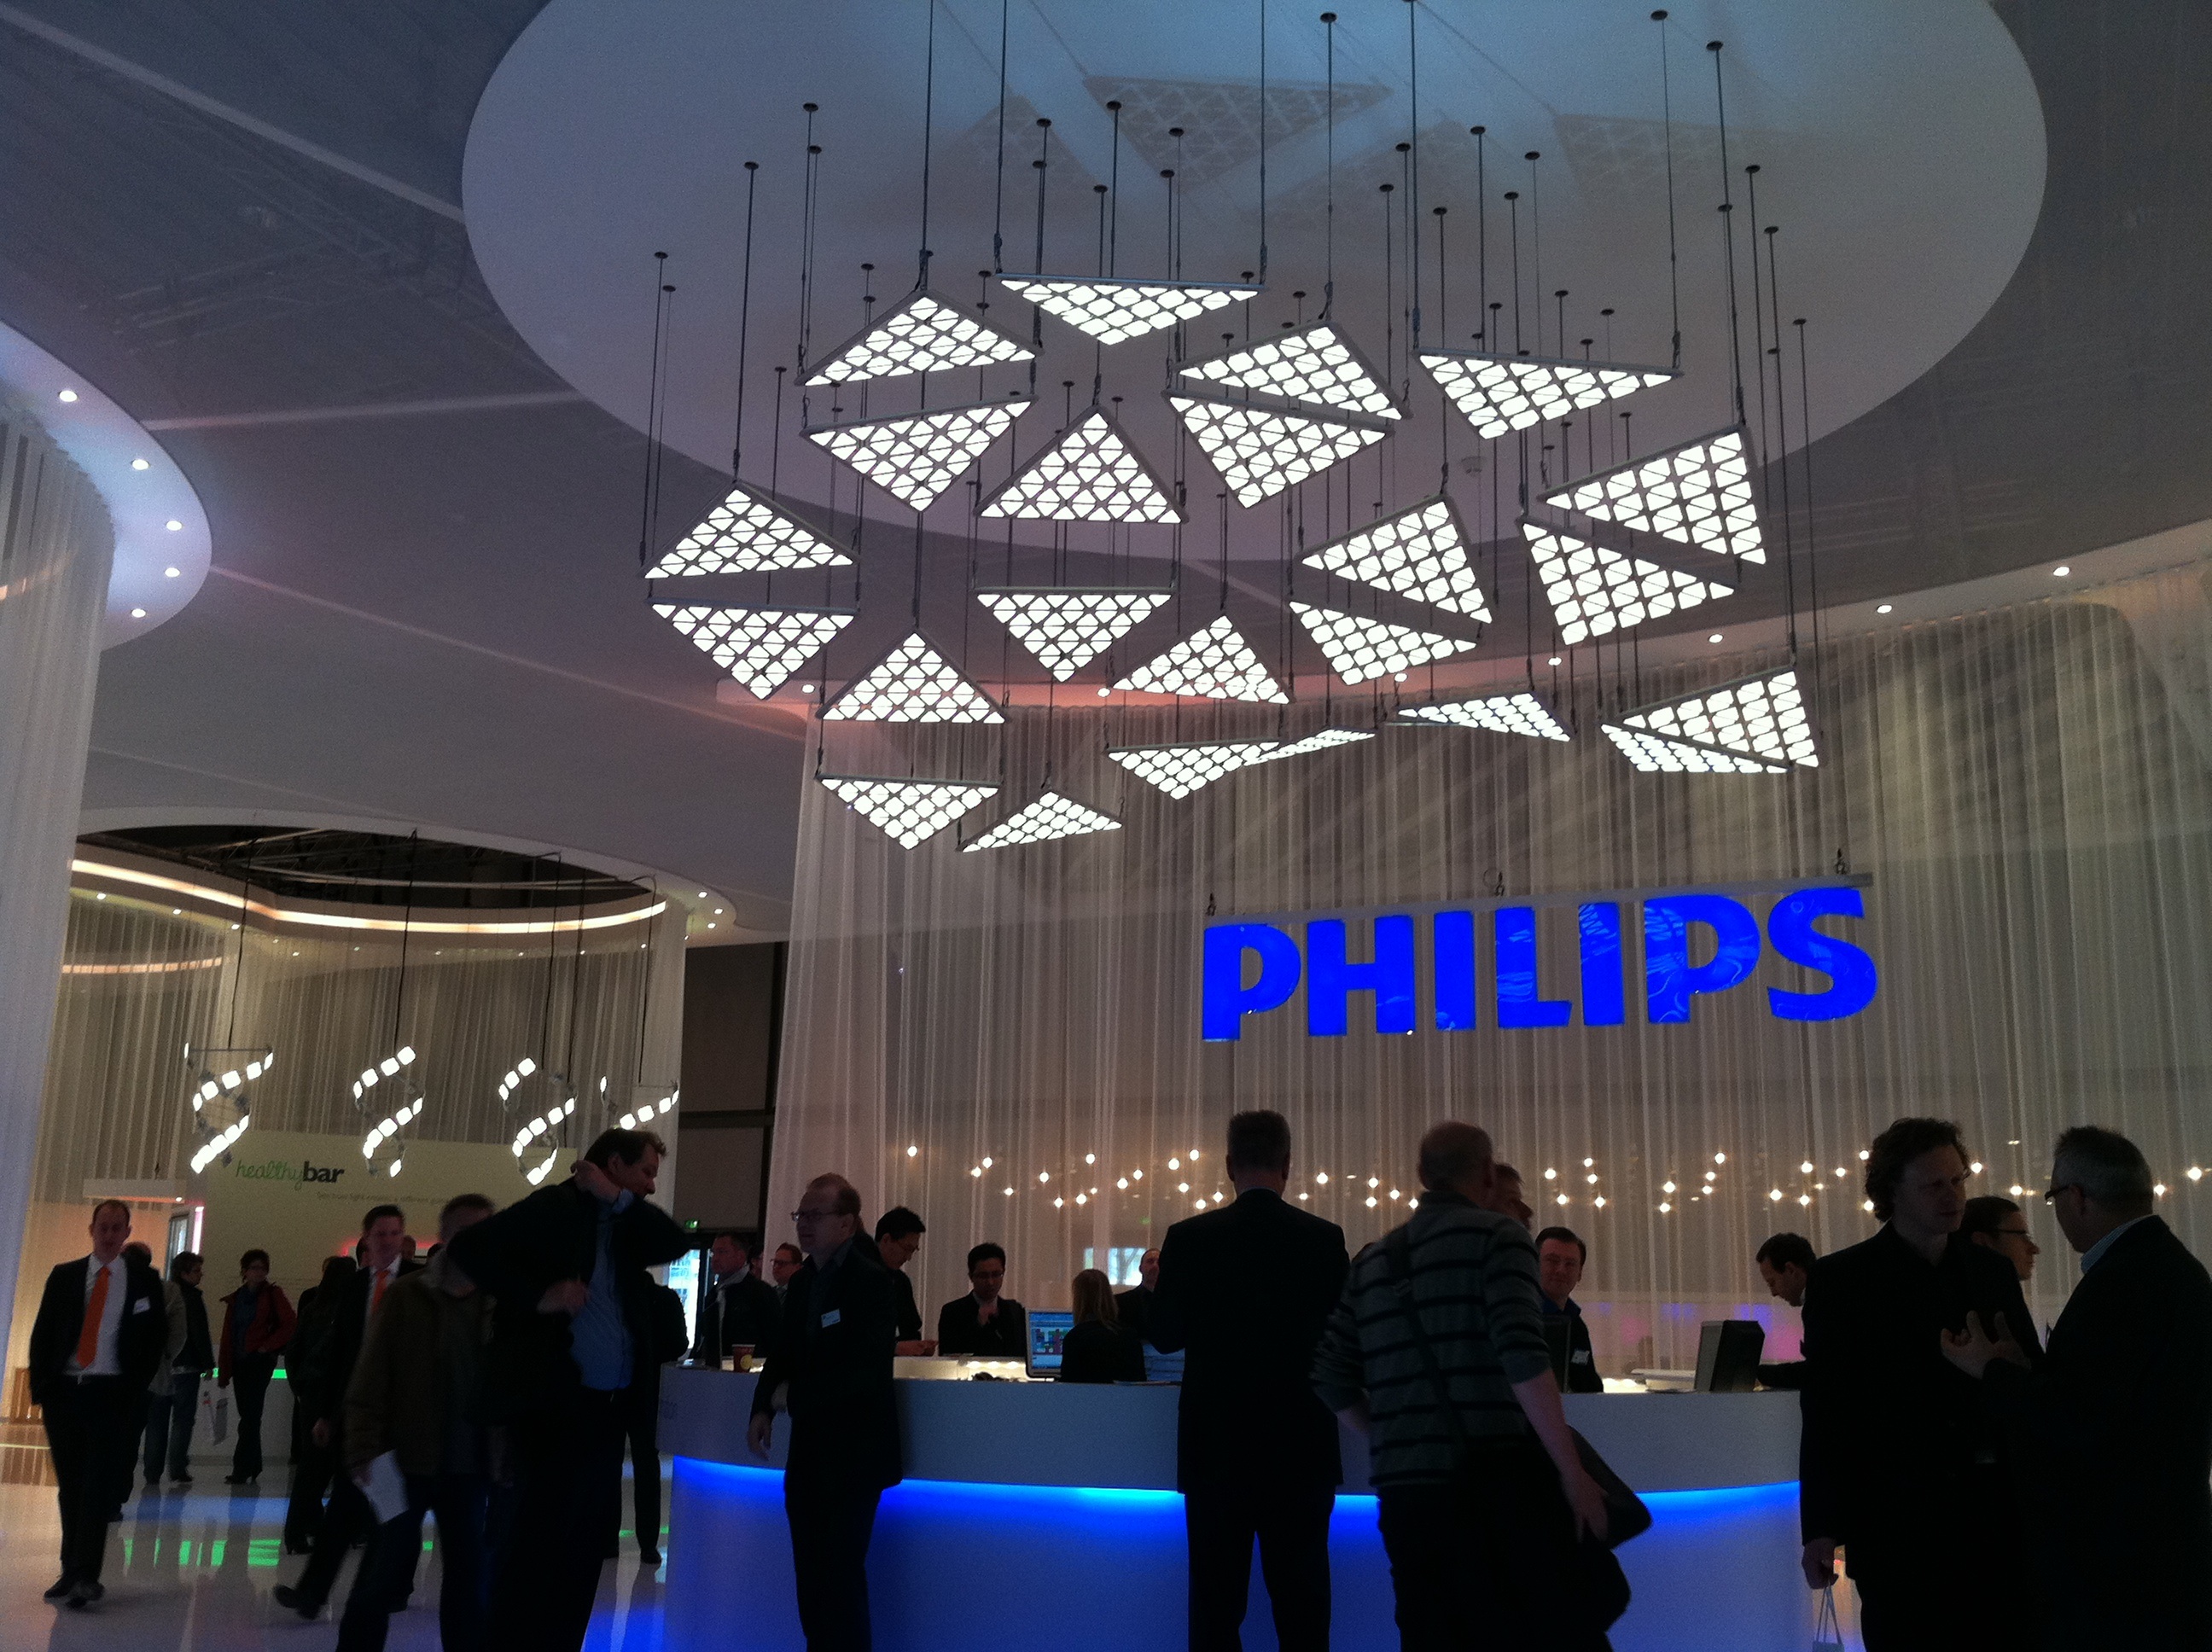      Philips   